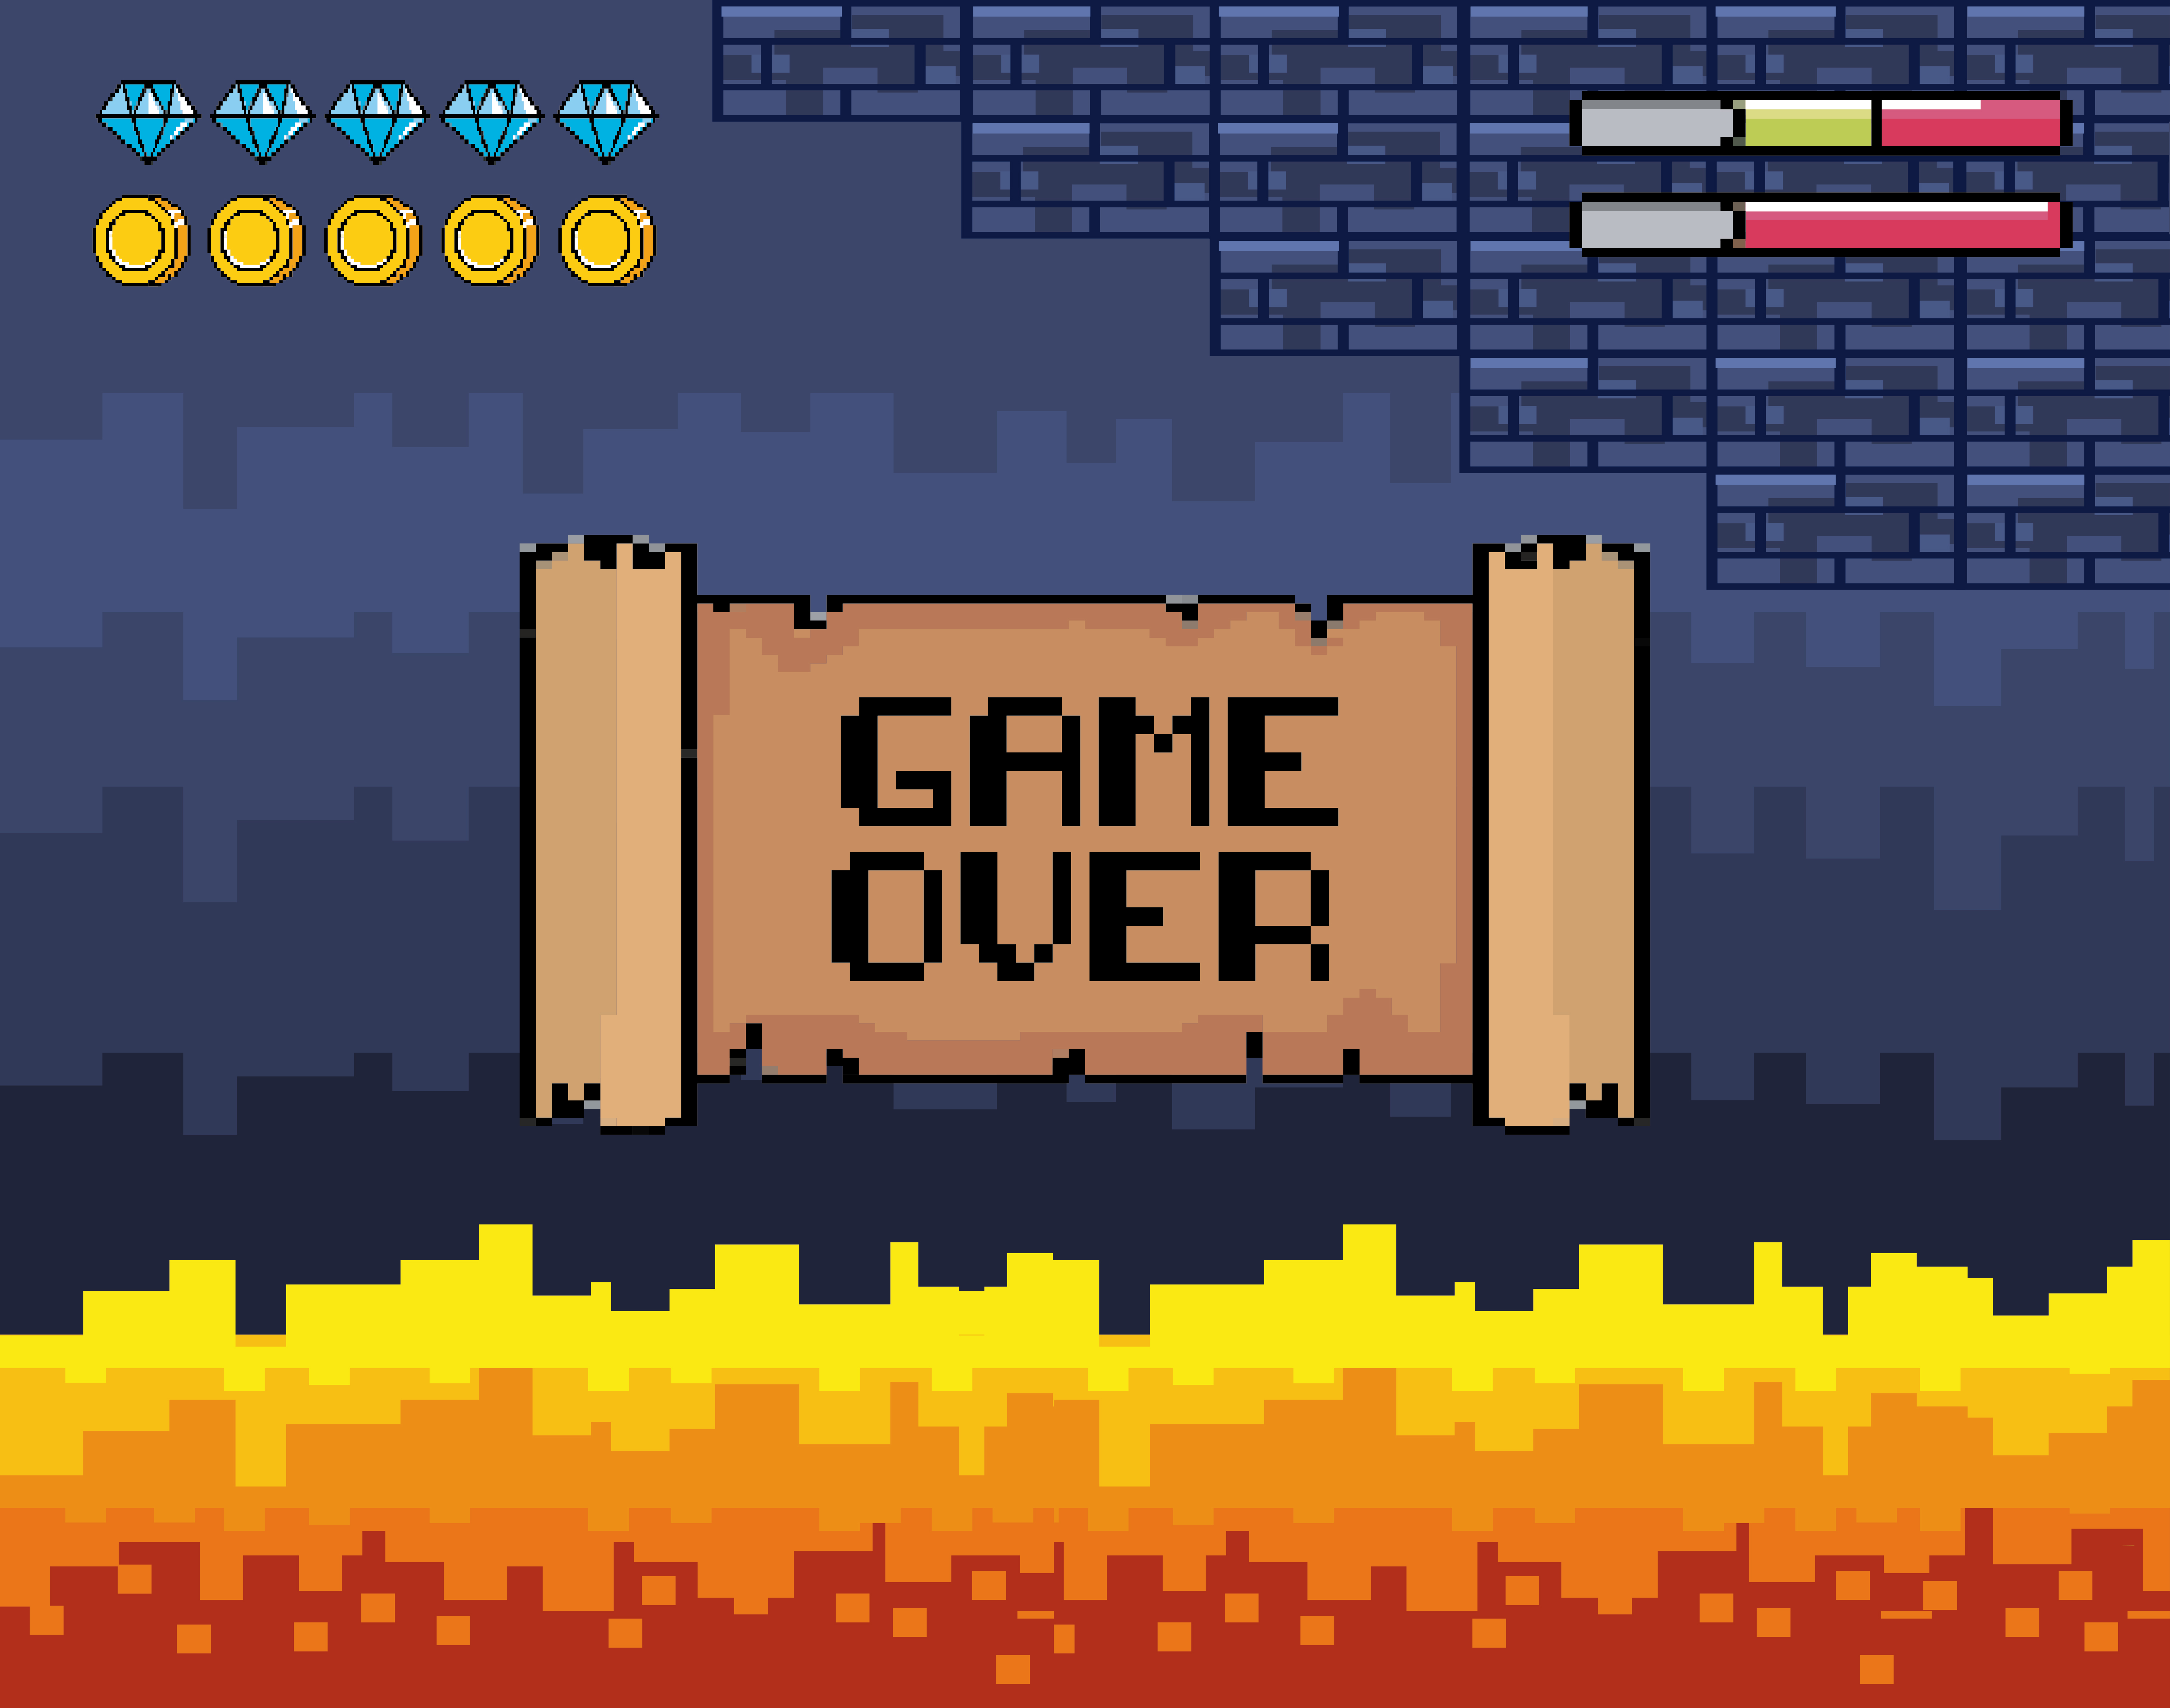 Imagem de video game com fundo azul. À esquerda superior algumas moedas e barra de vida à direita. Escrita em pergaminho no centro "GAME OVER"